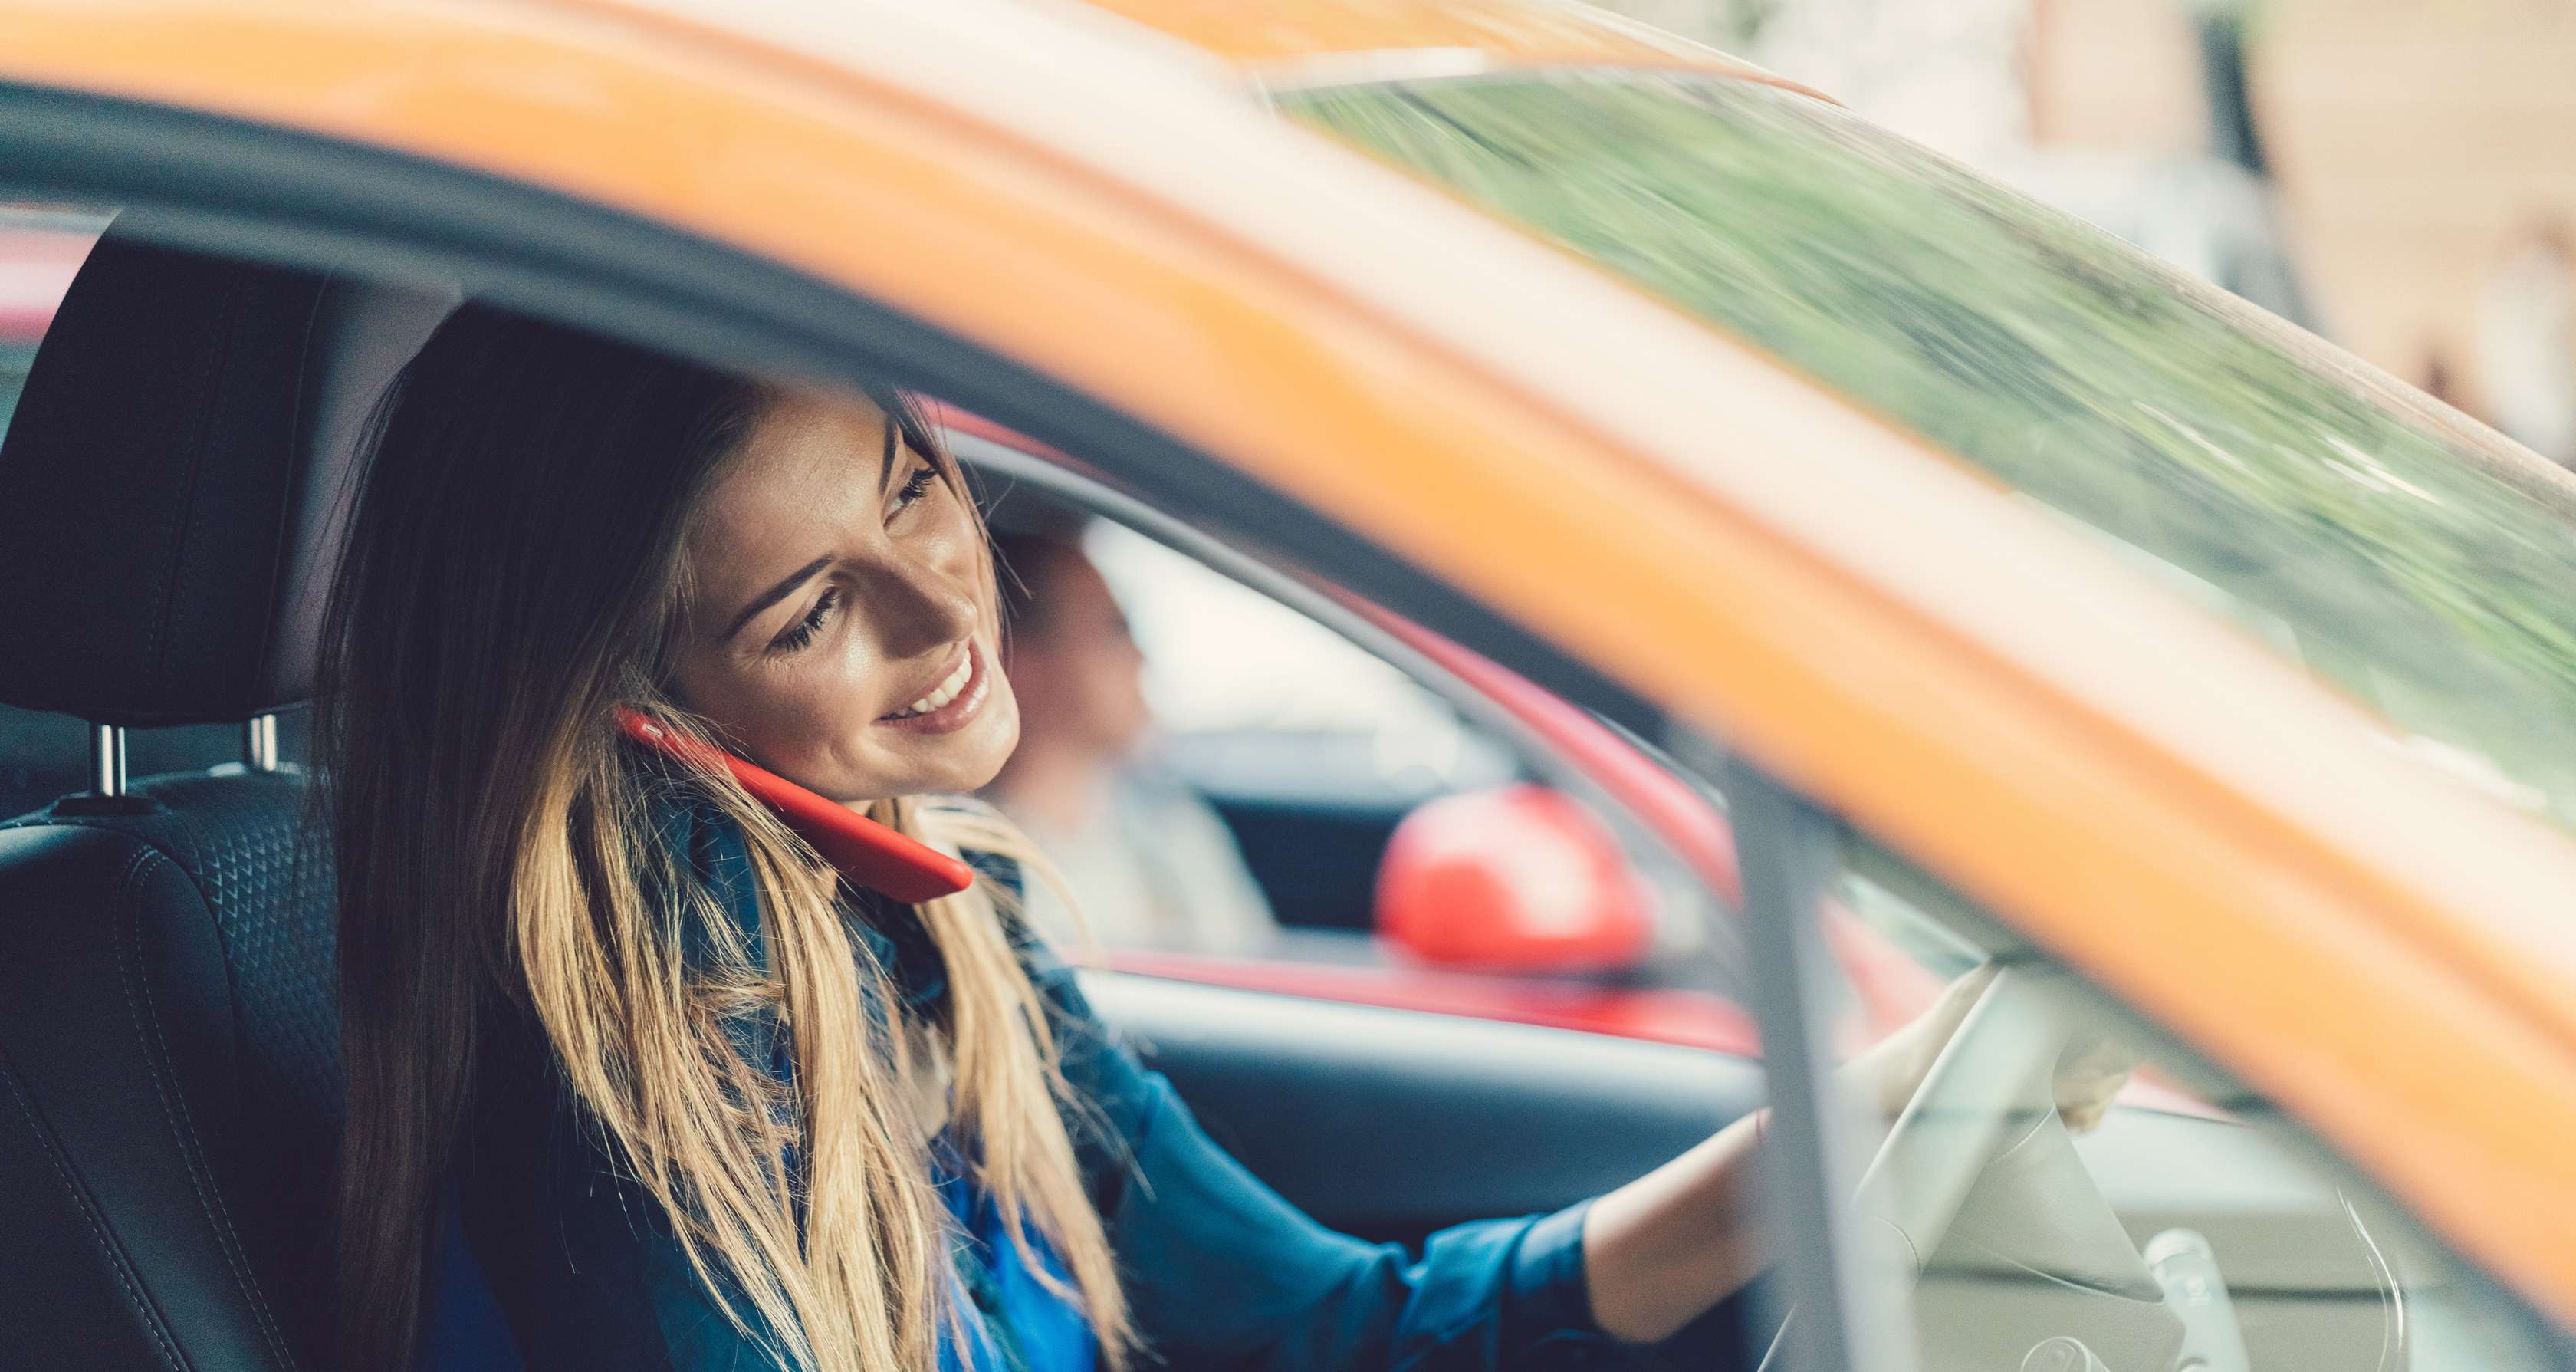 Eine blonde, langhaarige Frau hat ein rotes Smartphone an der Schulter eingeklemmt und telefoniert im Auto